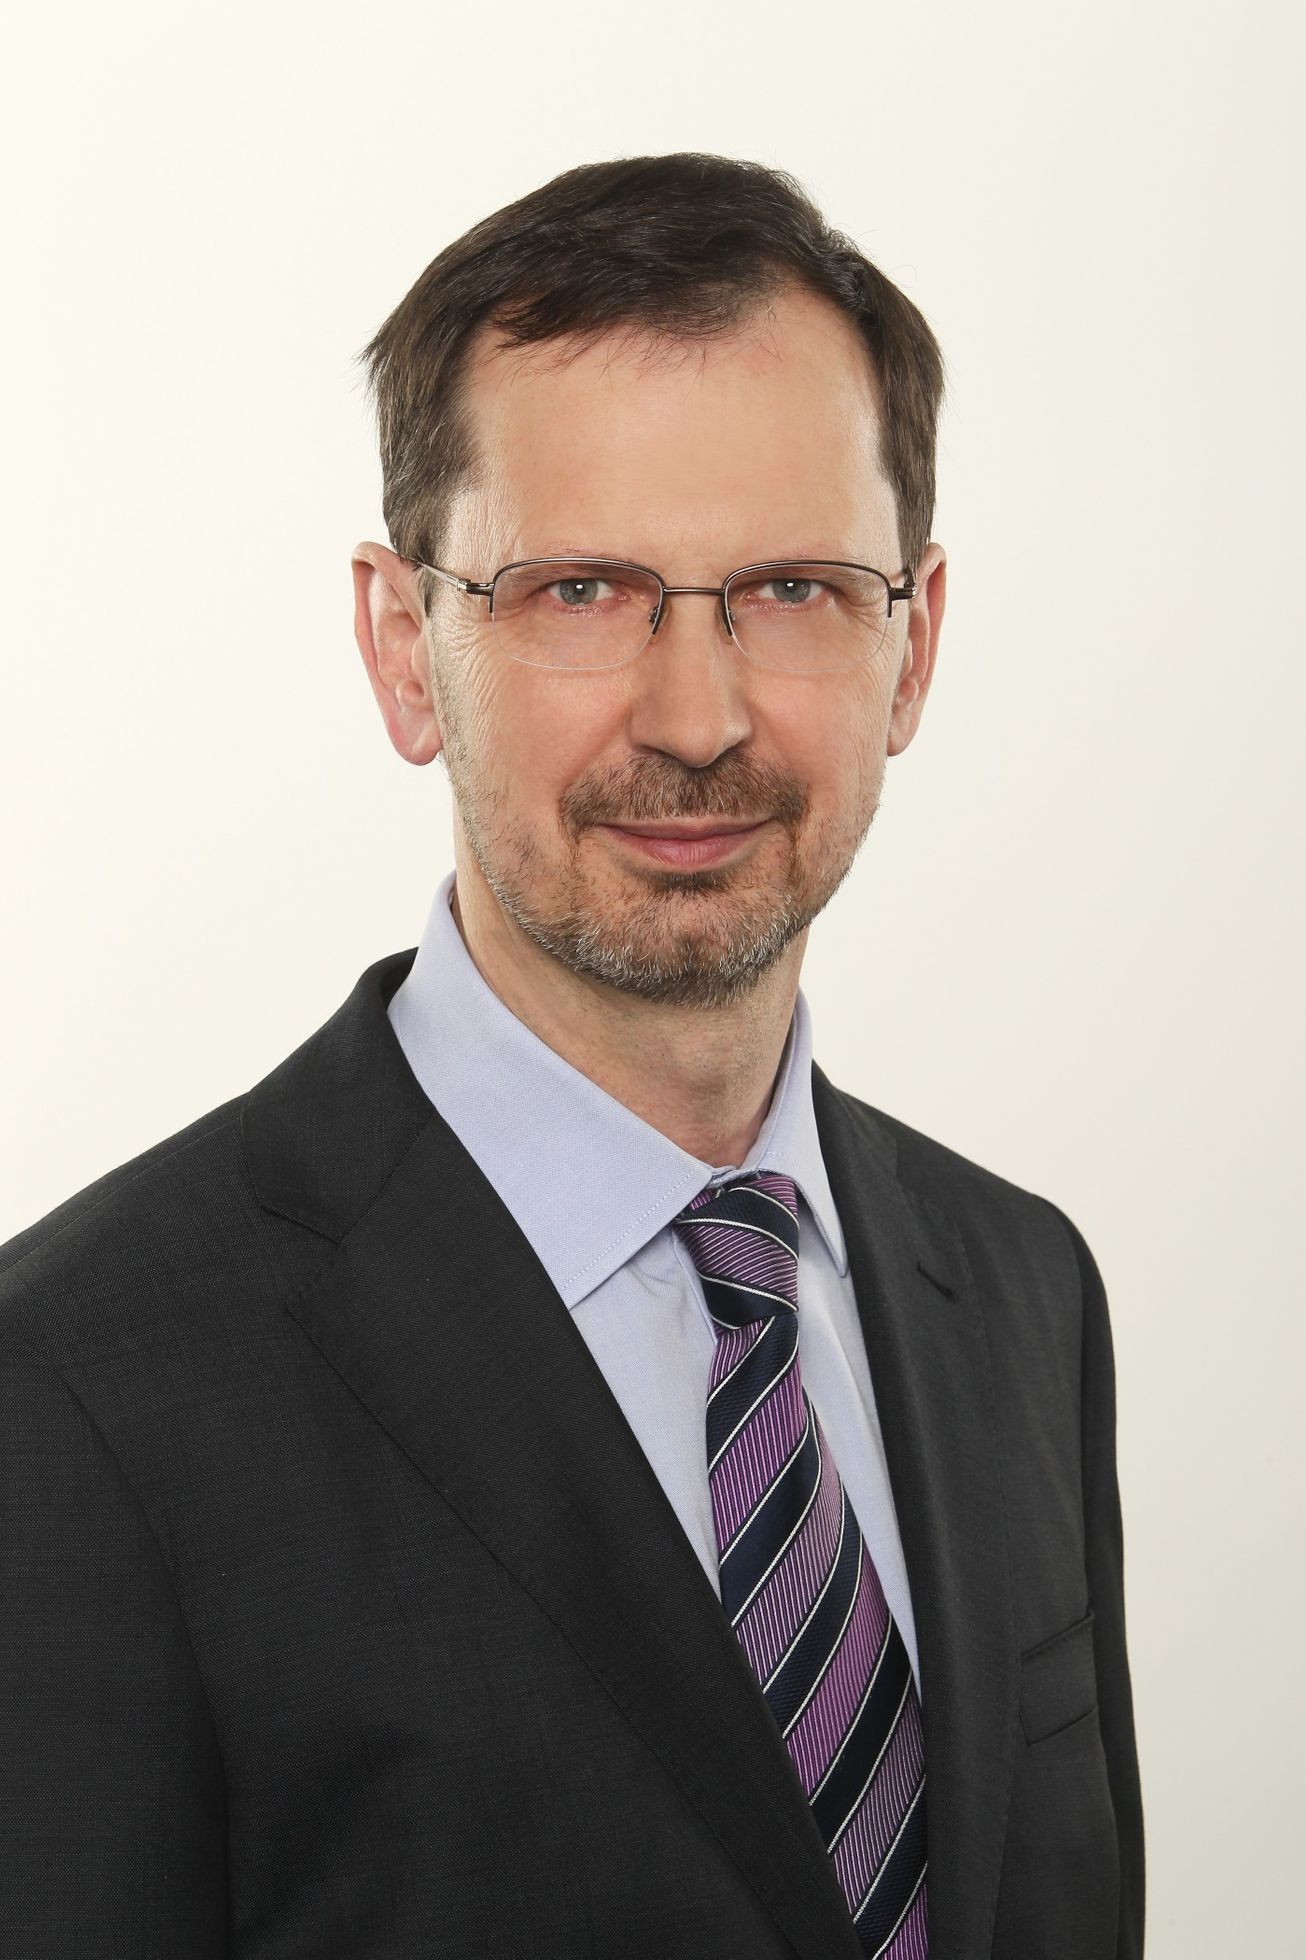 Zdeněk Skála, ředitel výzkumu Retail & Shopper společnosti GfK